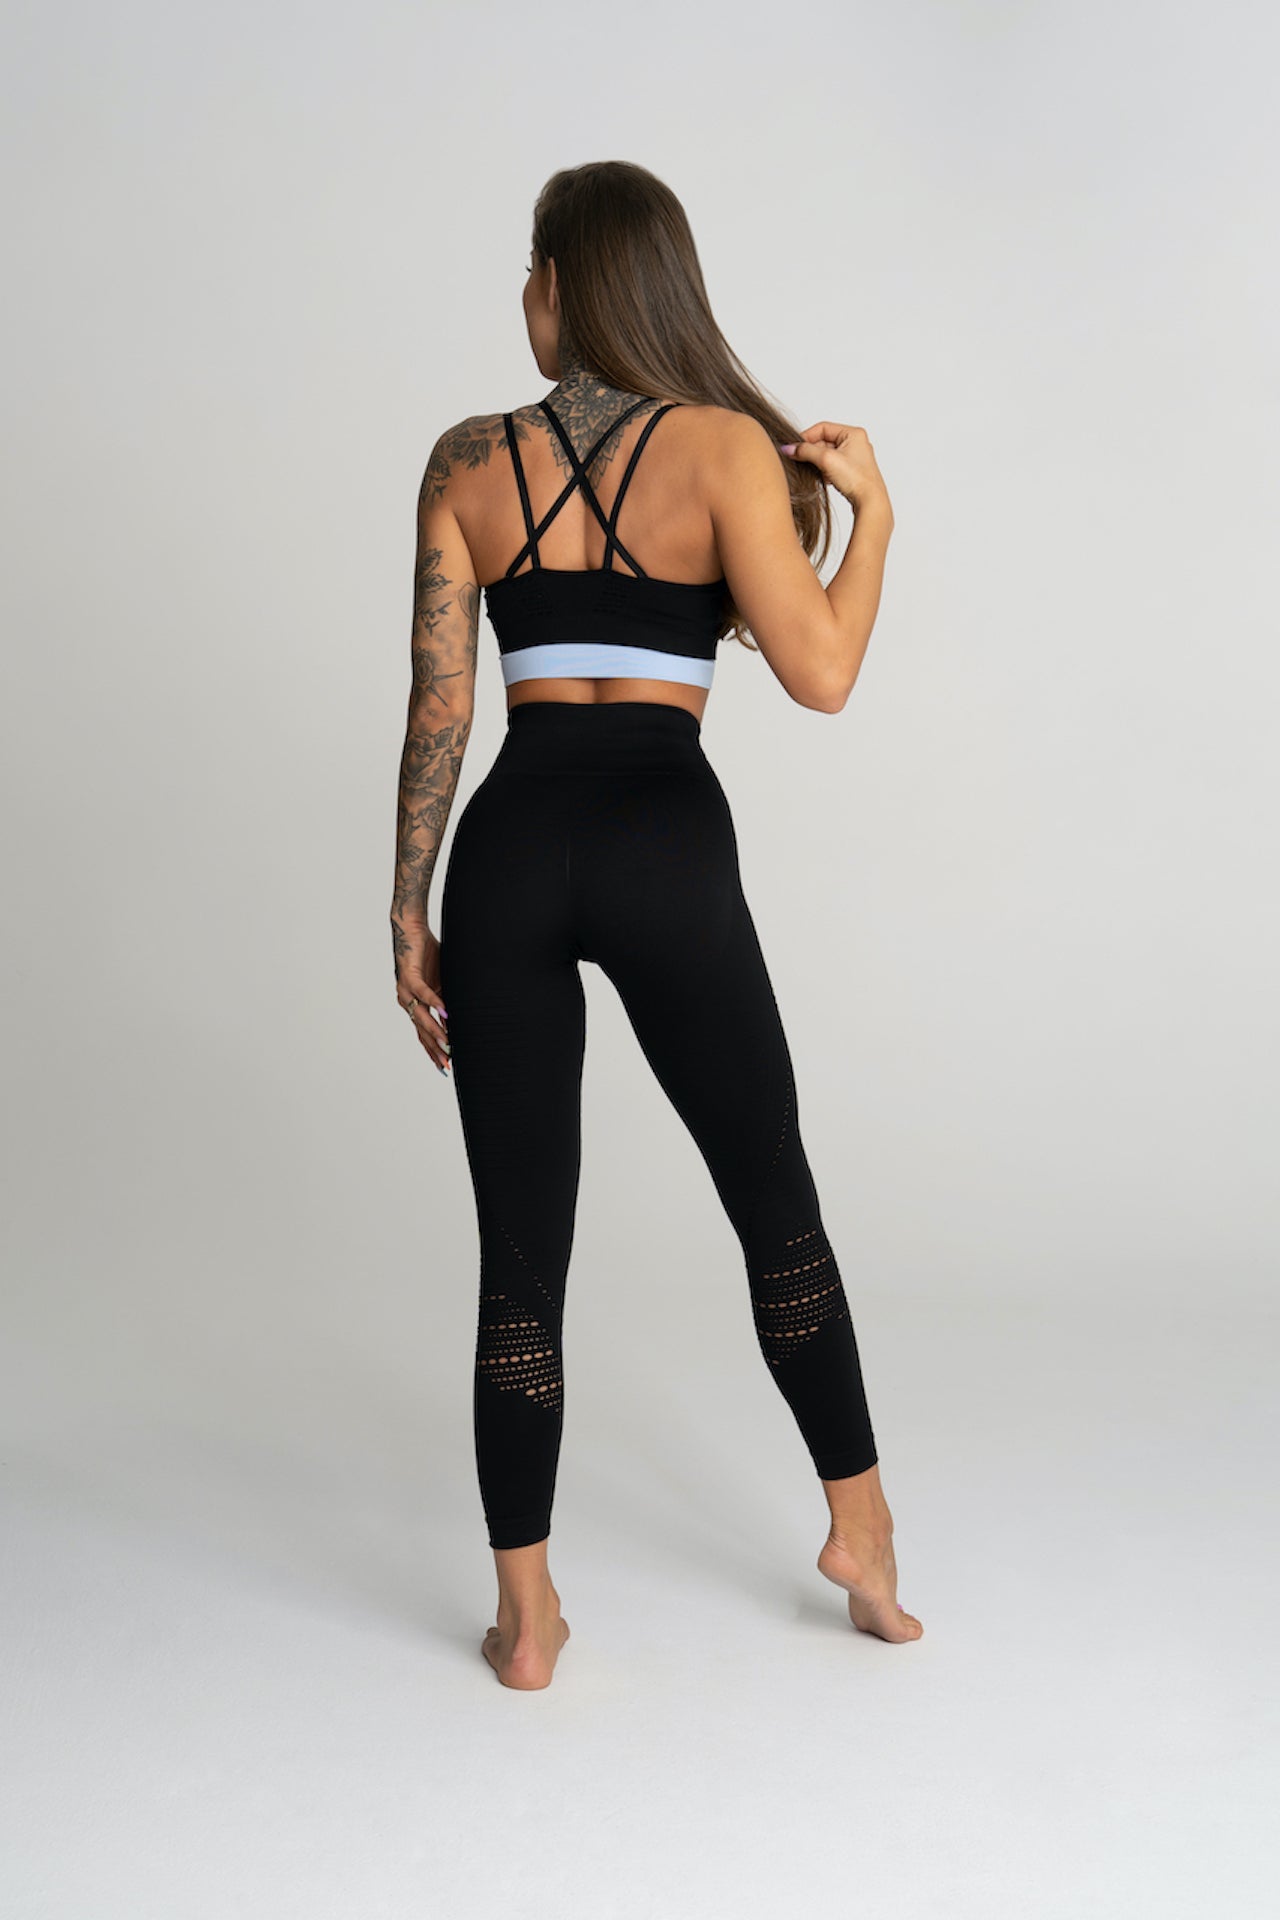 Details more than 140 buy branded leggings online latest